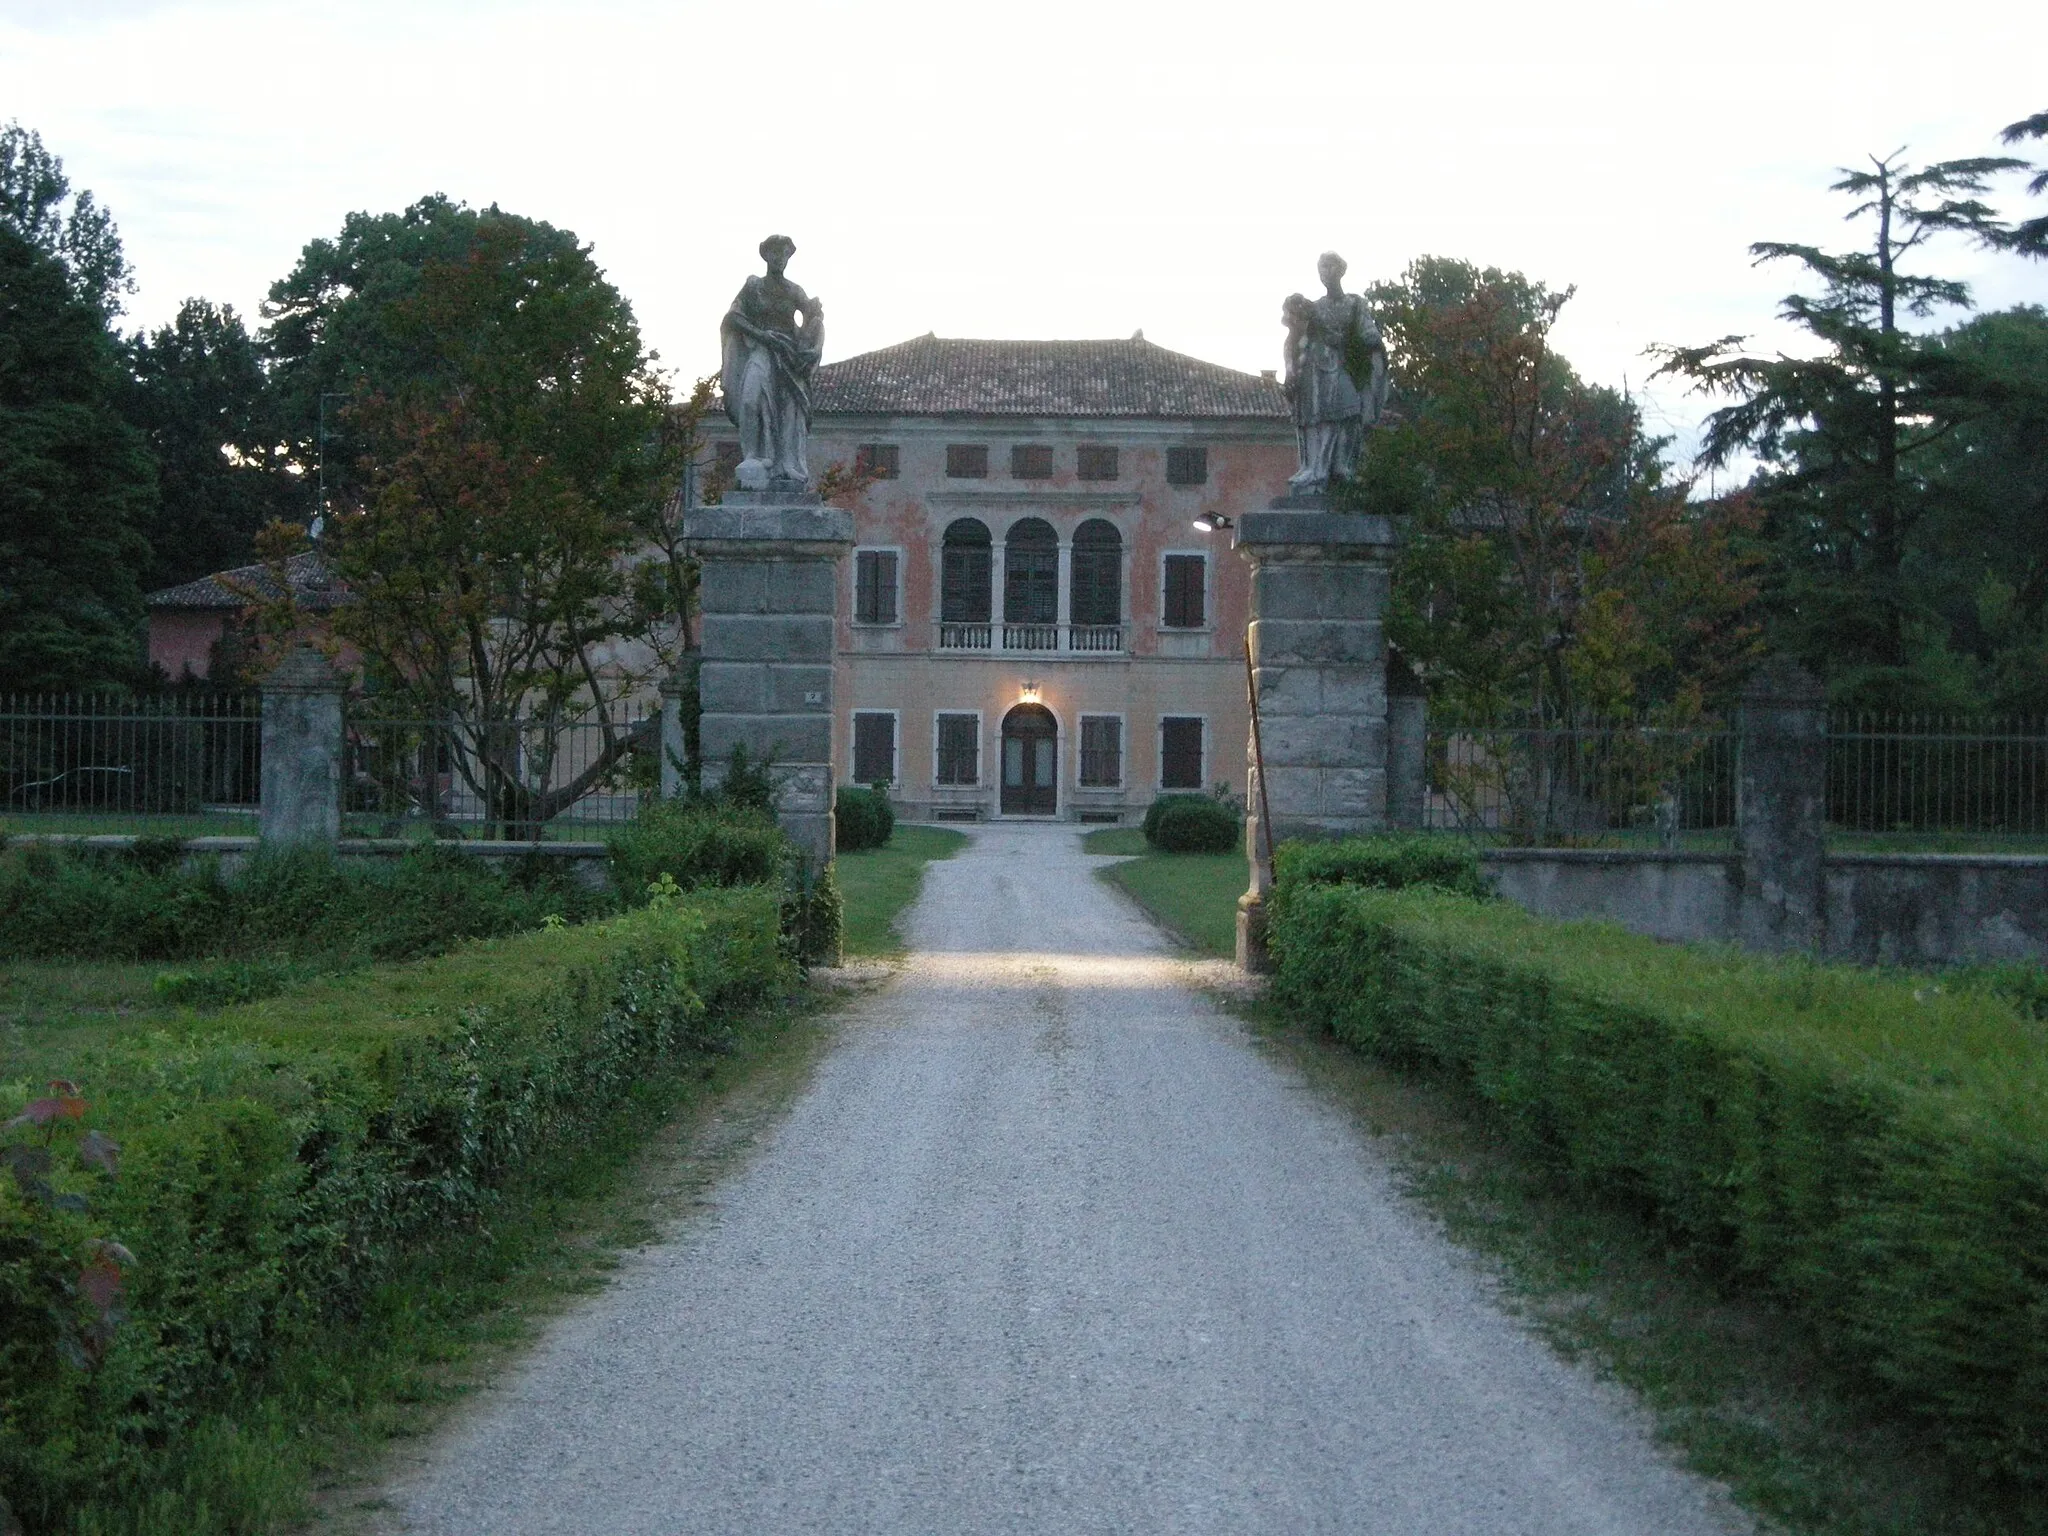 Image of Friuli-Venezia Giulia